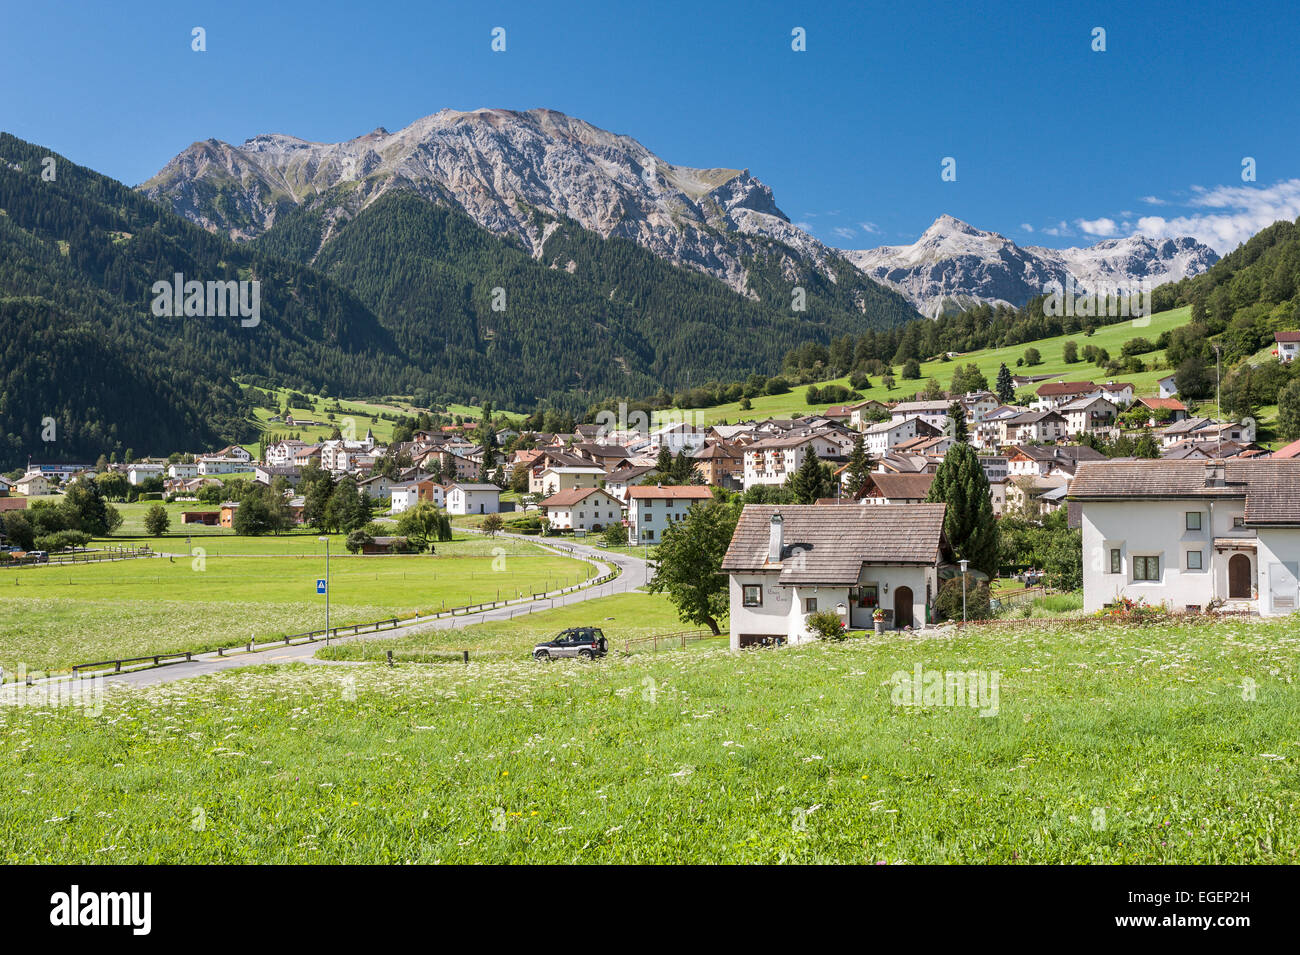 View of the village of Müstair, Graubünden, Switzerland Stock Photo